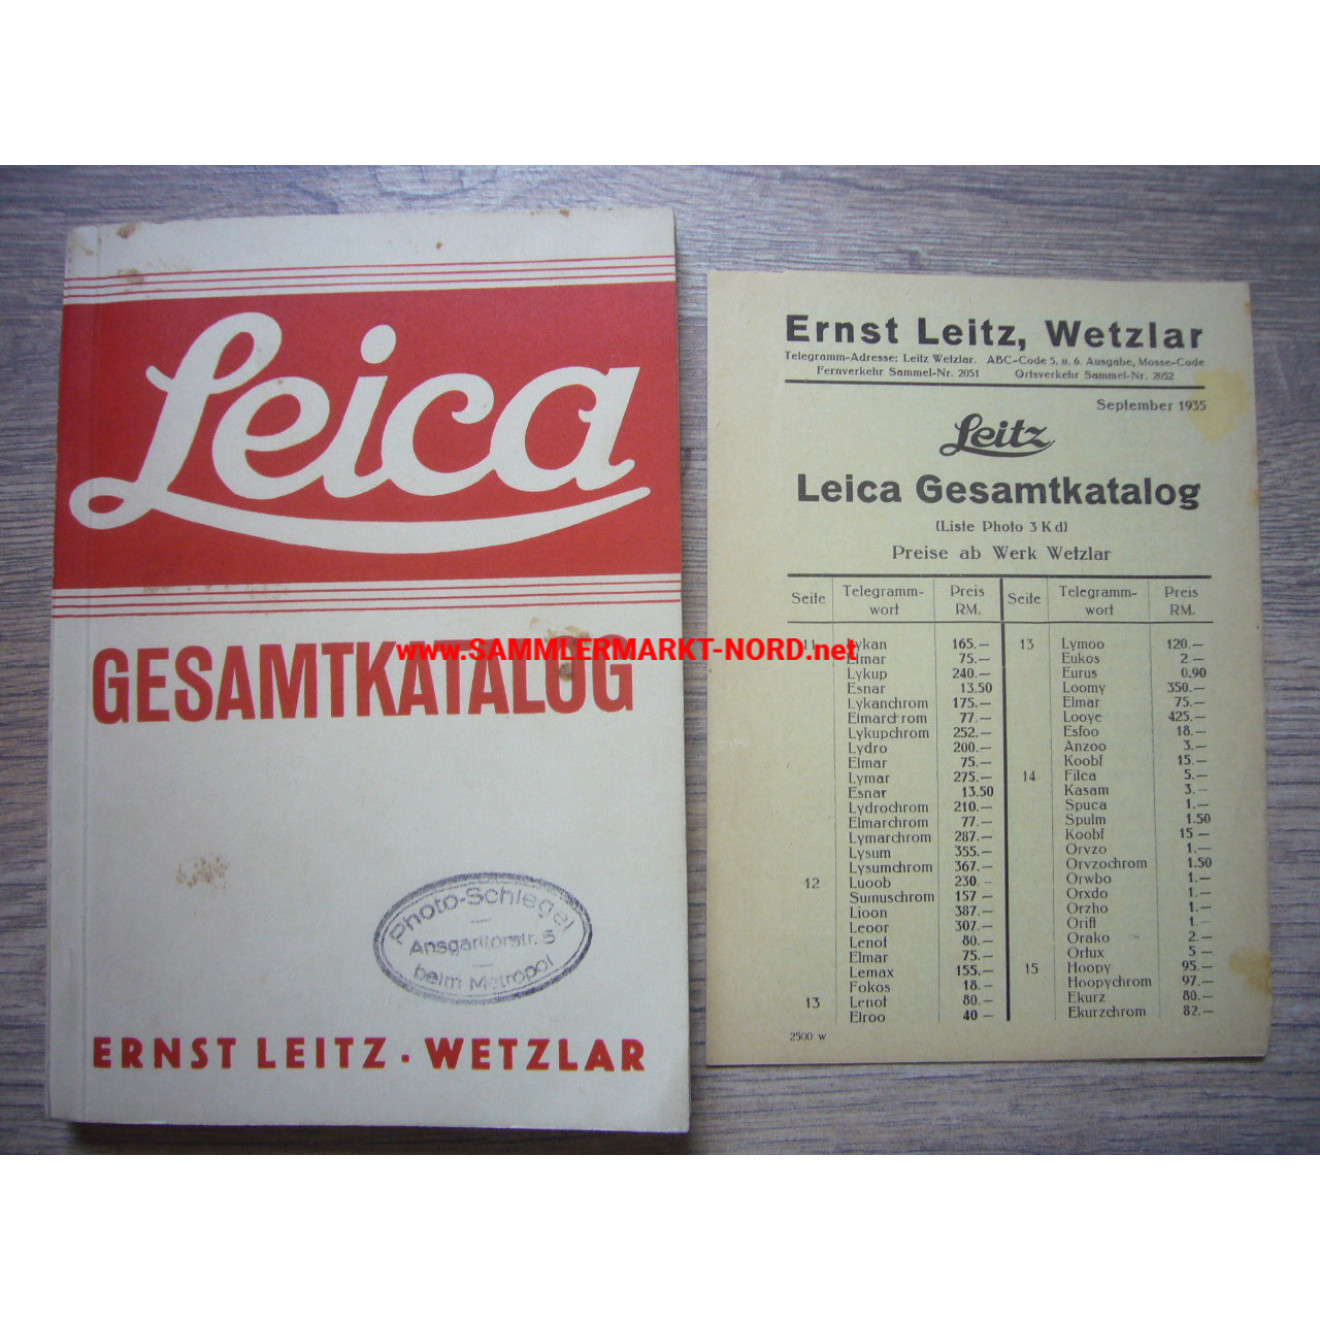 Leica, Ernst Leitz Wetzlar - Gesamtkatalog 1935